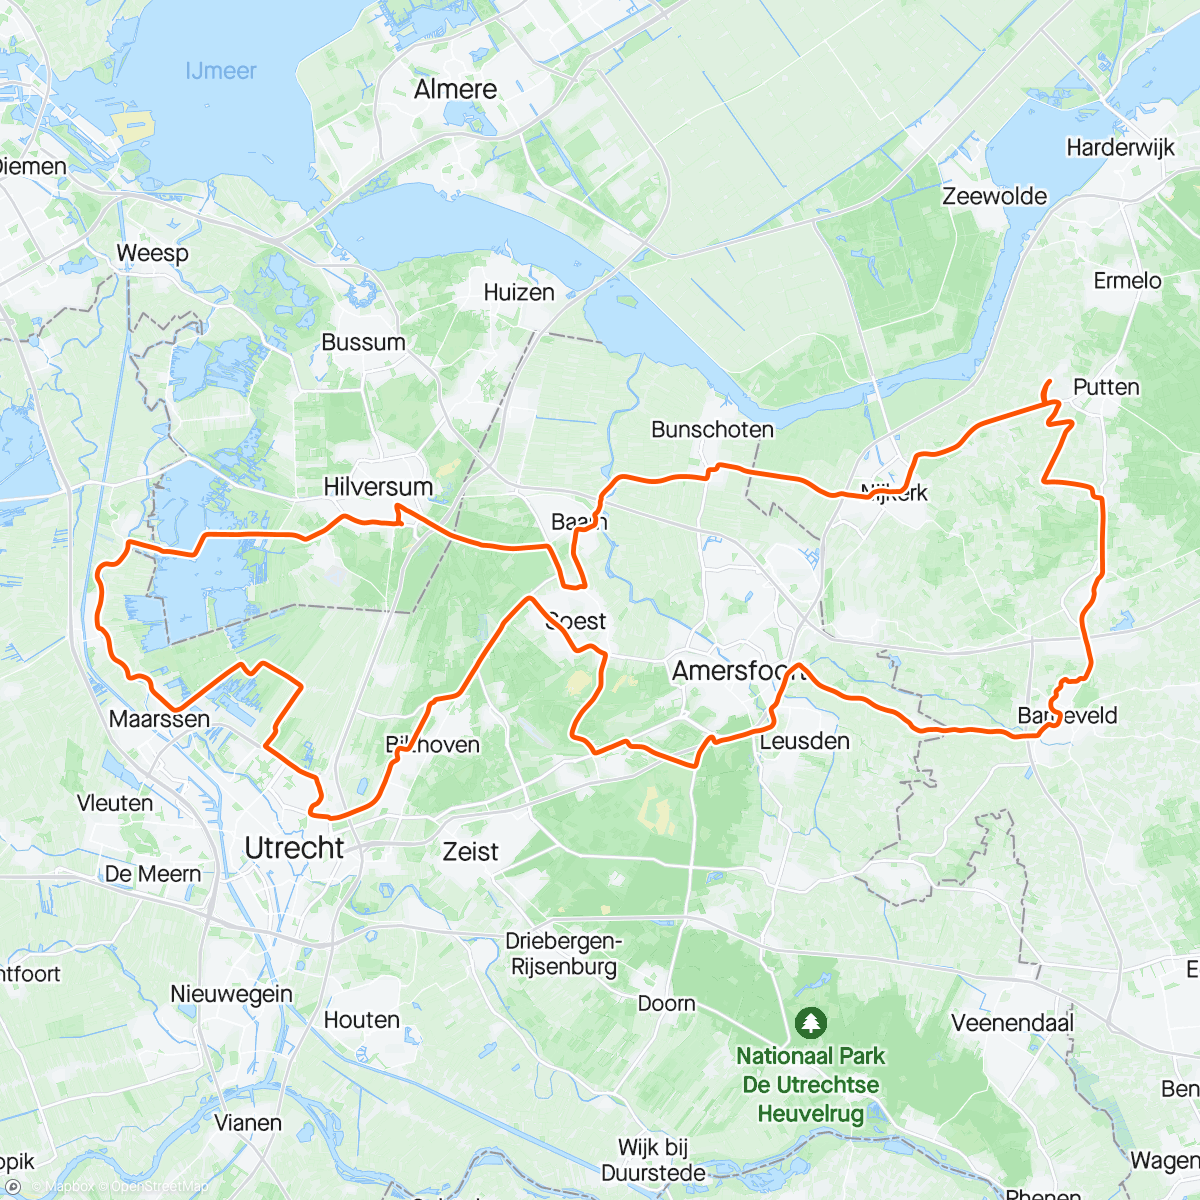 「Dagje touren met Marty」活動的地圖